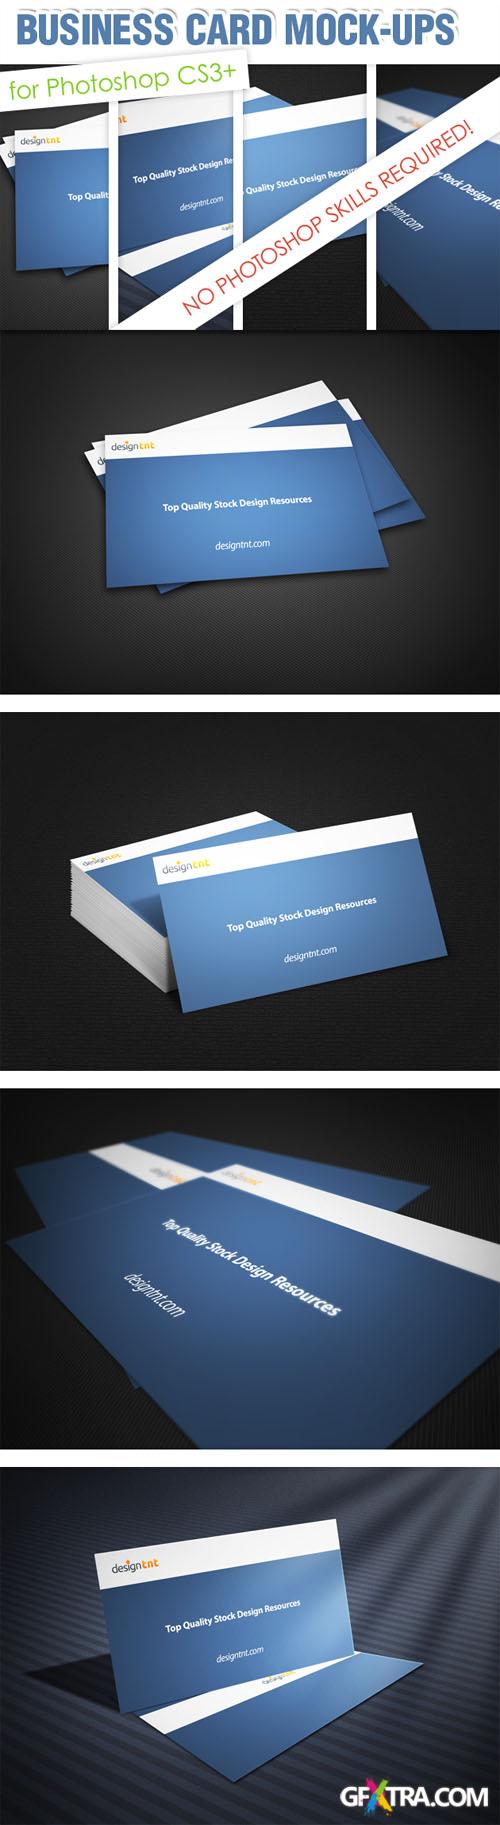 Designtnt - Business Card mock-ups PS Action